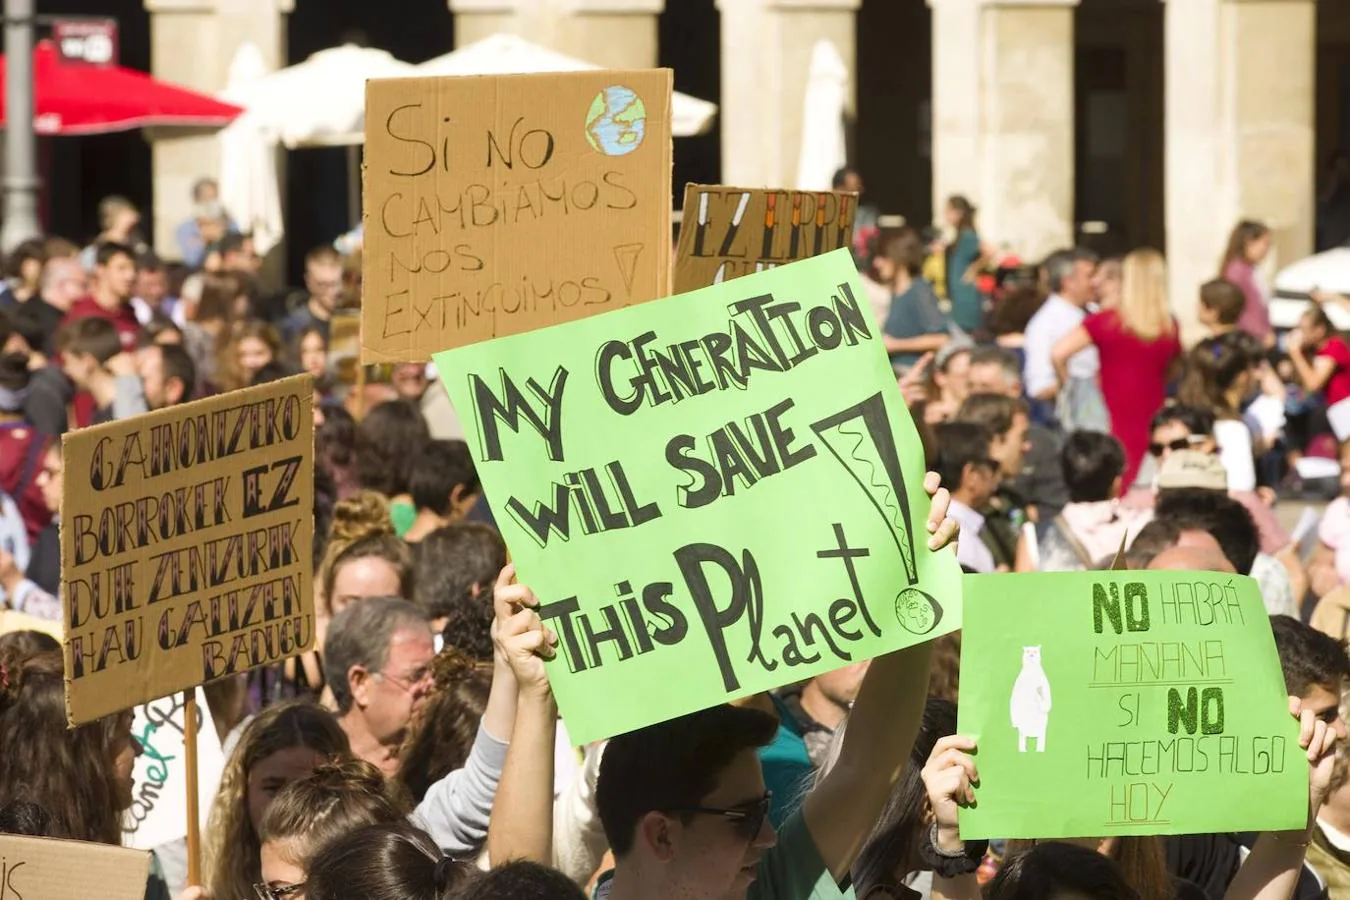 Los asistentes a la concentración de Vitoria por la «crisis climática» sostienen carteles reivindicativos. En uno de ellos se puede leer «My Generation will save this Planet» (mi generación va a salvar este planeta, traducido al español). 